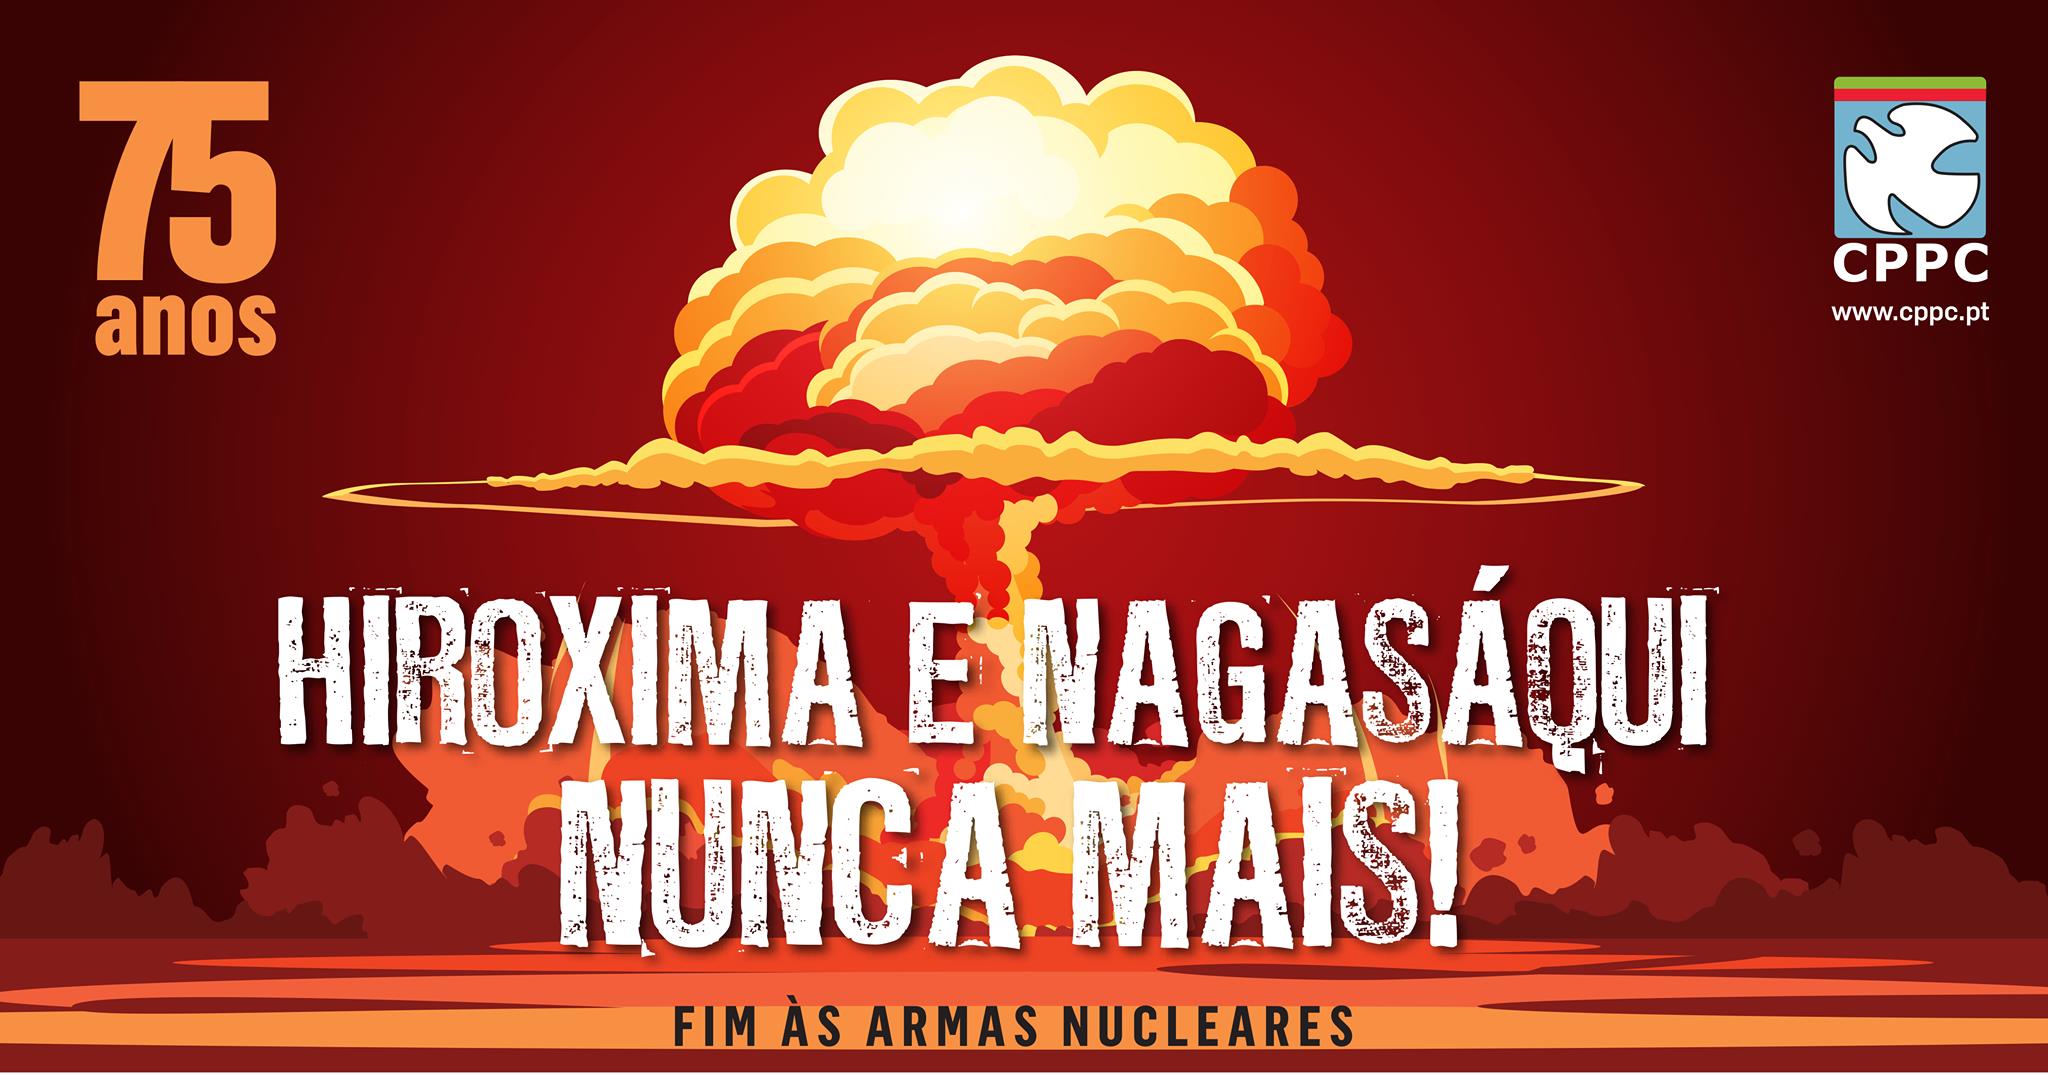 75 anos dos bombardeamentos de hiroxima e nagasaqui pelo fim das armas nucleares 1 20200810 1094927843